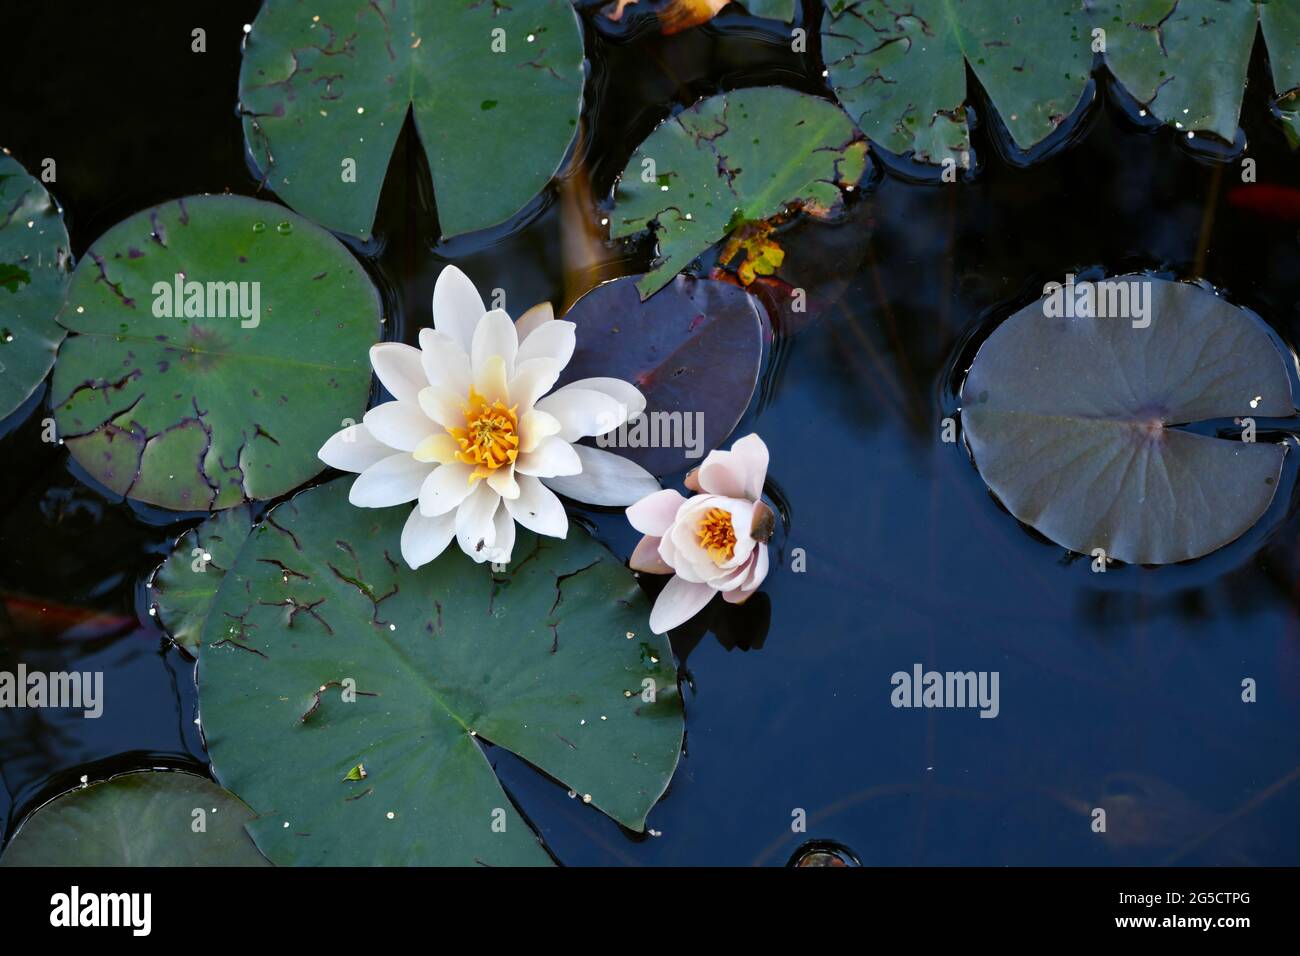 hollandia  -  wunderschöne gelbe Seerose im Teich Stock Photo